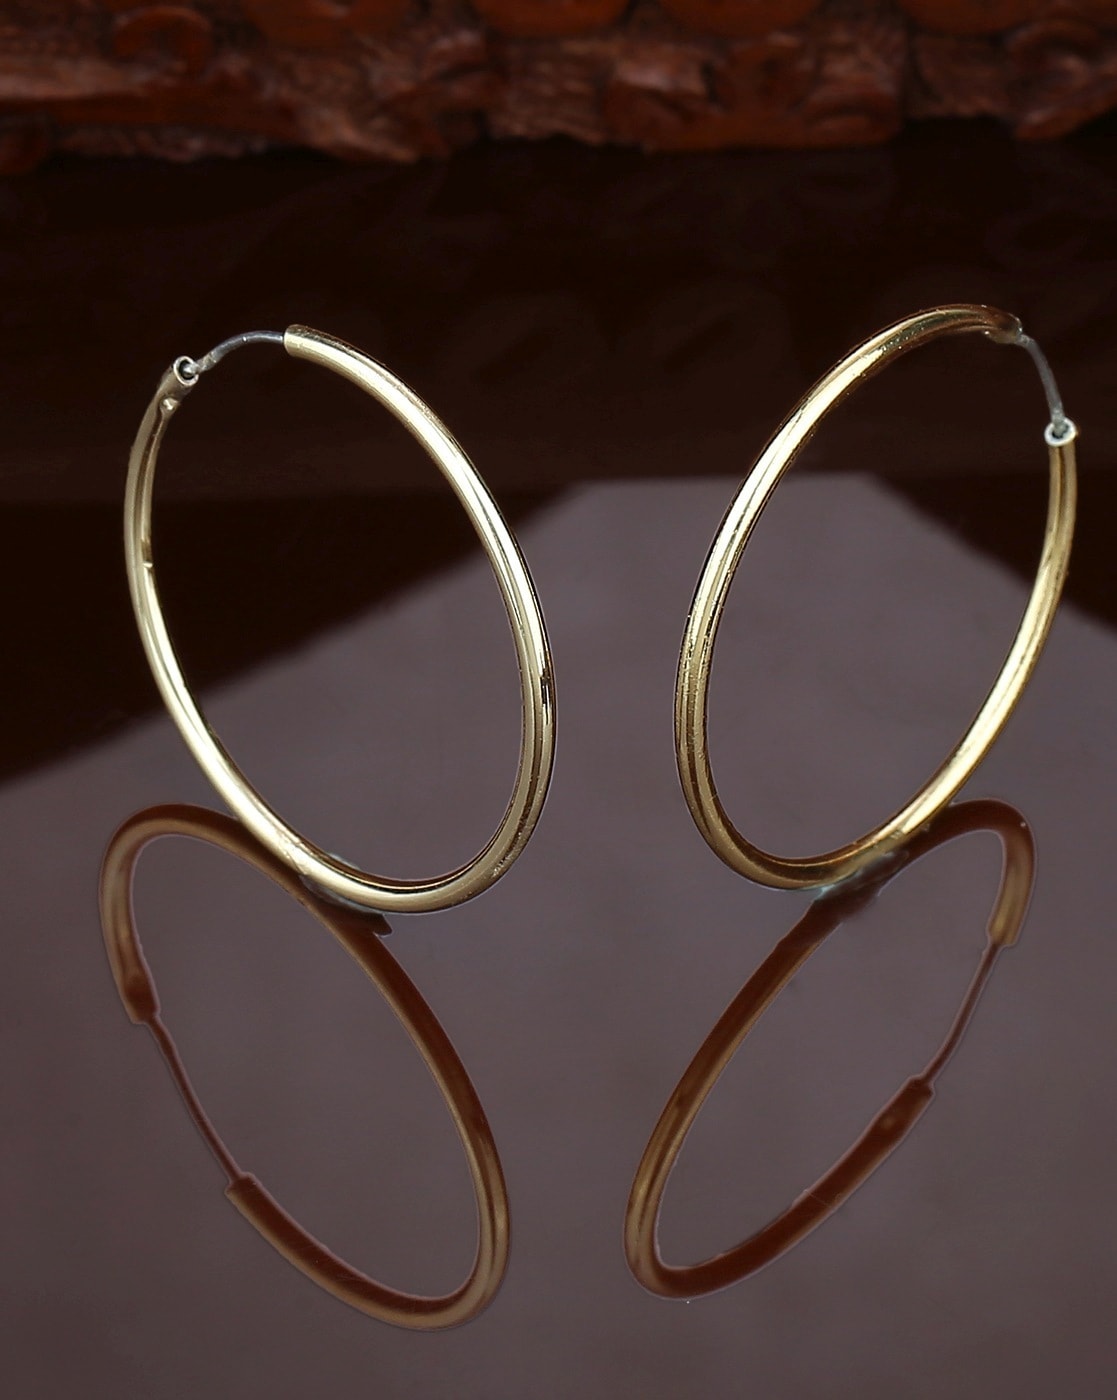 Buy Two Tone Stylish Hoop Earring In 22K Gold Online | Madanji Meghraj